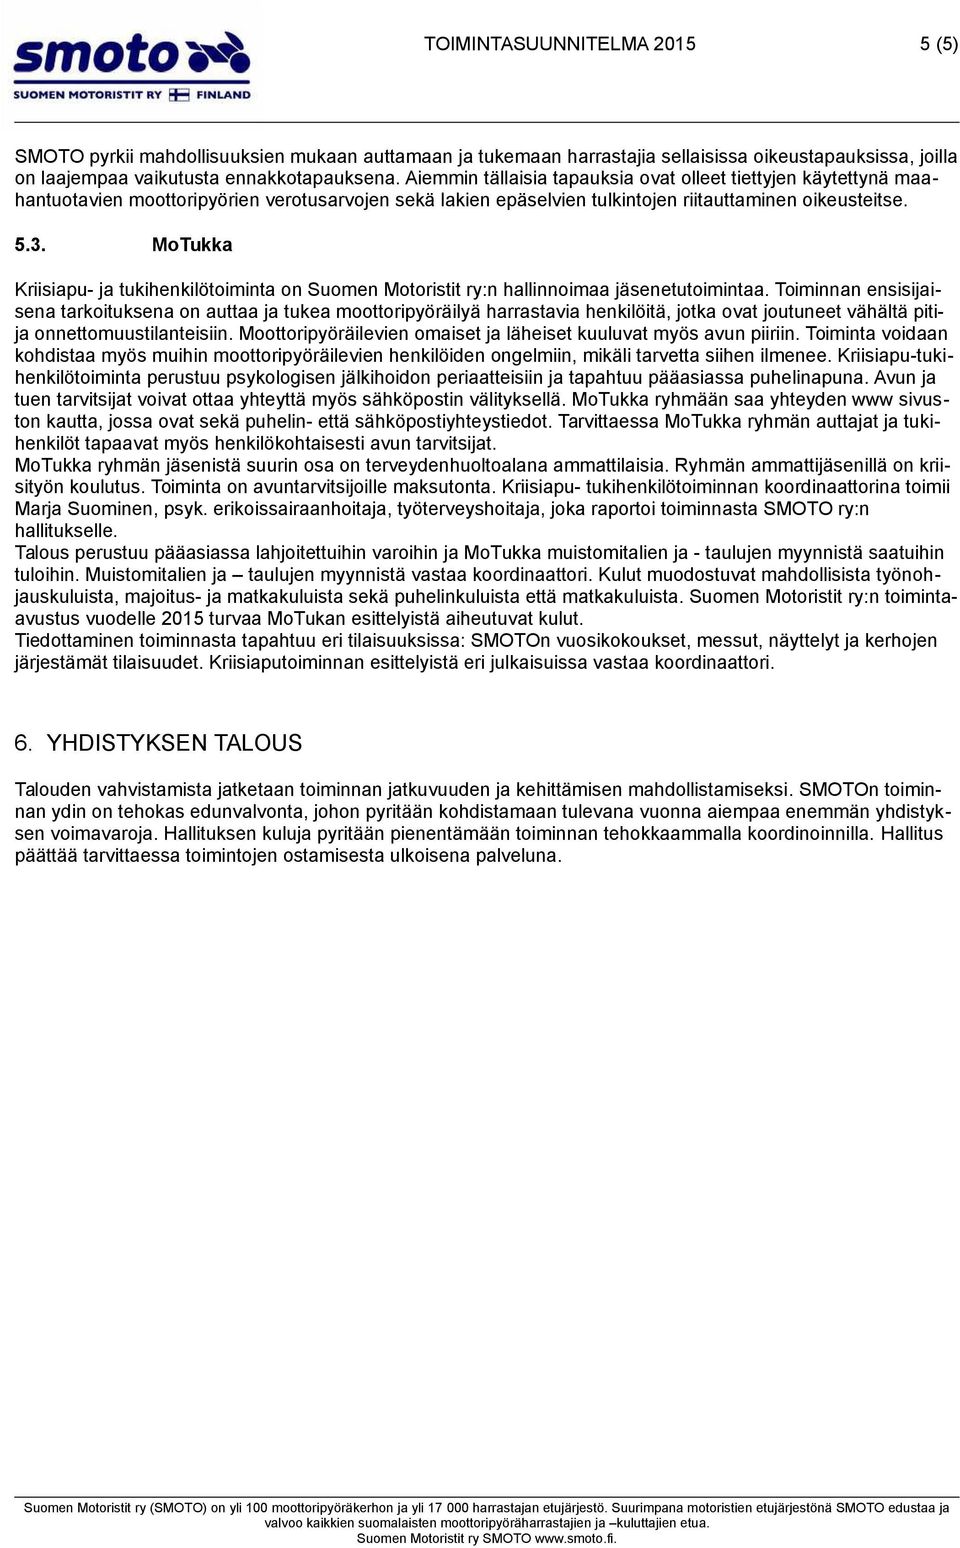 MoTukka Kriisiapu- ja tukihenkilötoiminta on Suomen Motoristit ry:n hallinnoimaa jäsenetutoimintaa.